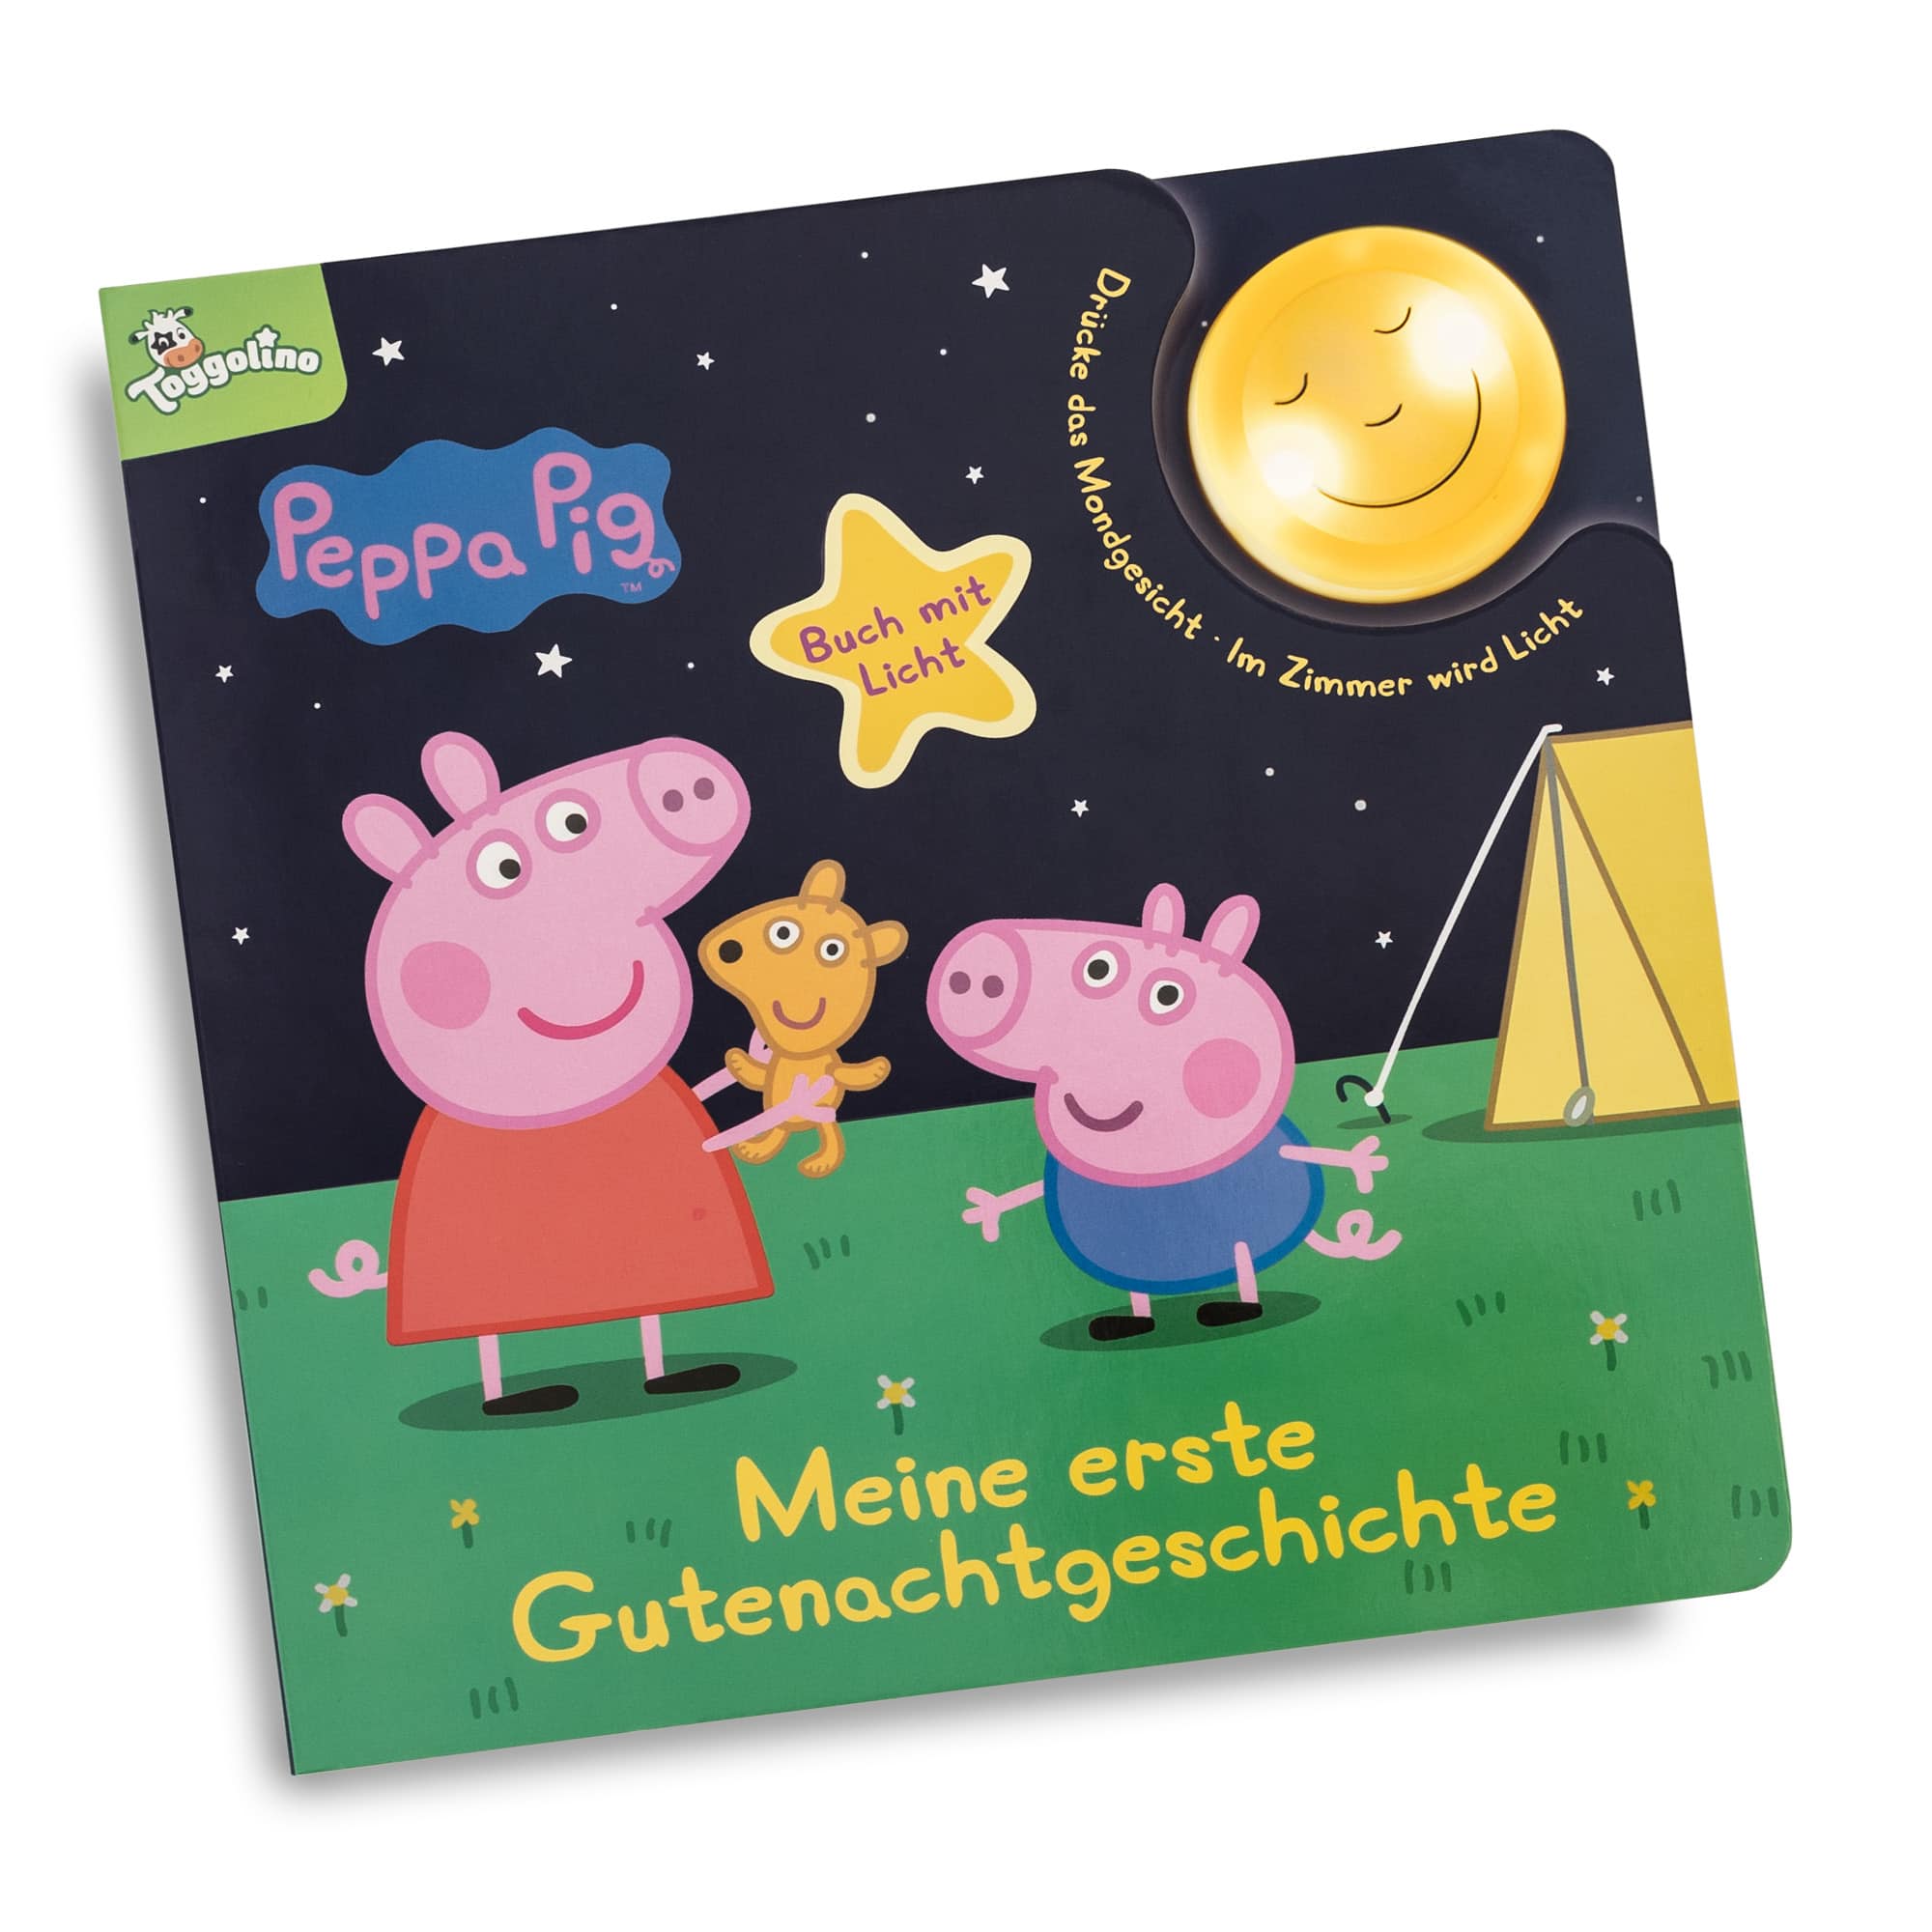 Peppa Pig: Meine erste Gutenachtgeschichte PANINI Mehrfarbig 2000581132600 1